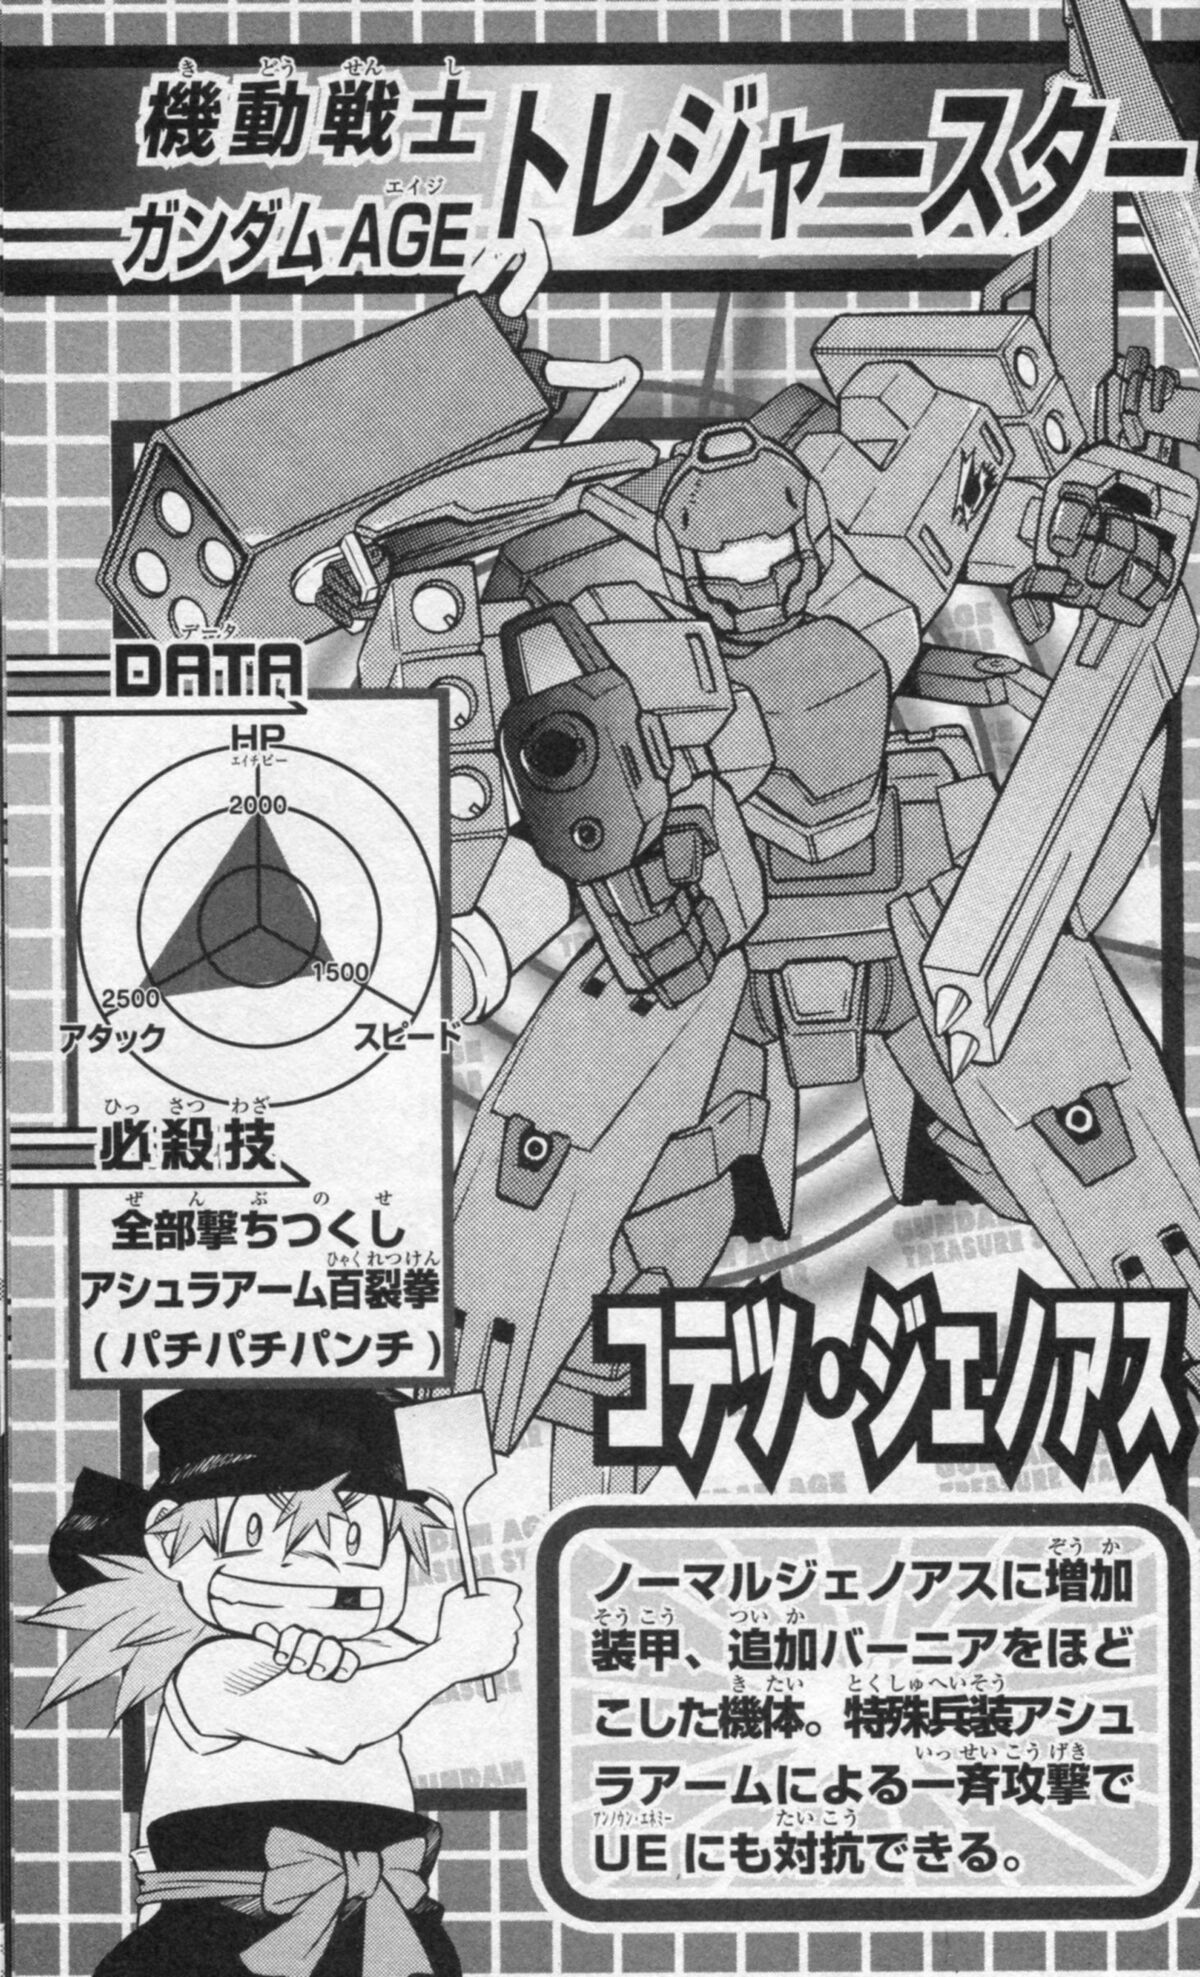 Kotetsu Sakai The Gundam Wiki Fandom 0232